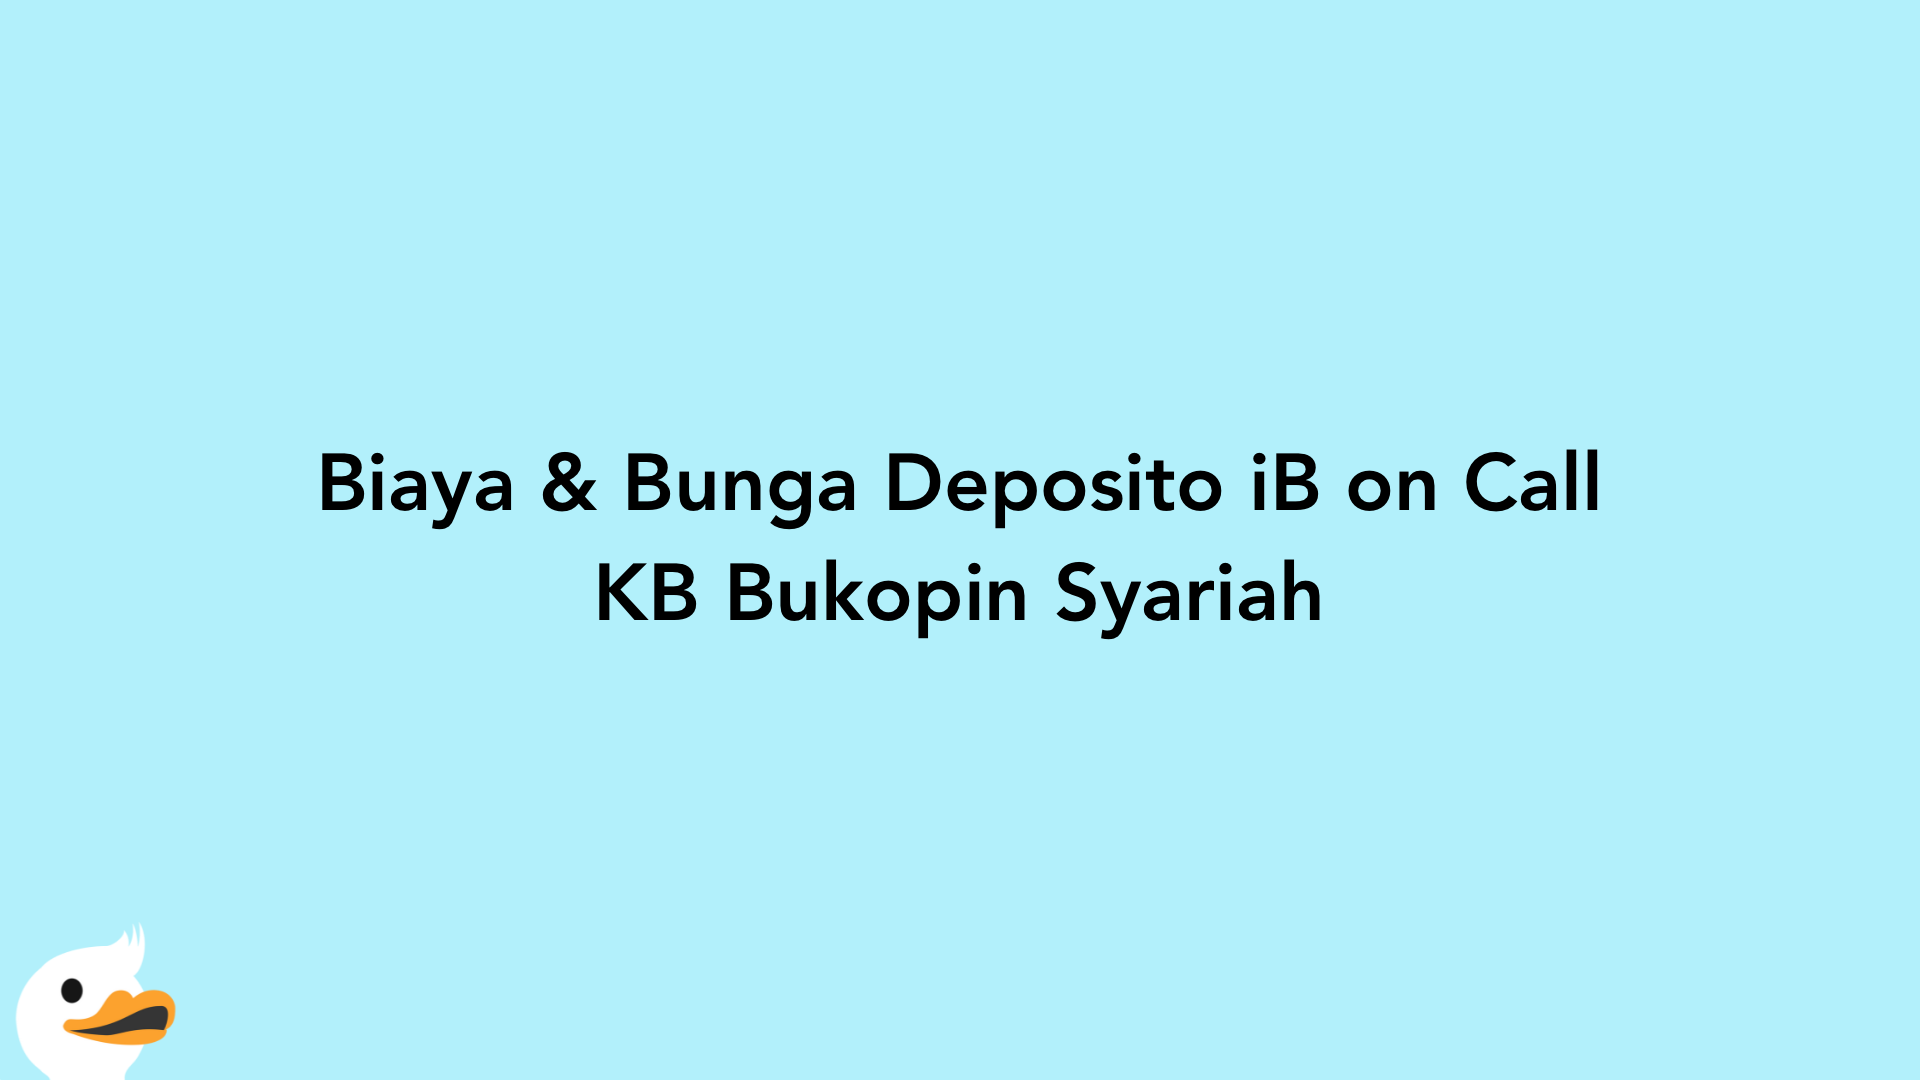 Biaya & Bunga Deposito iB on Call KB Bukopin Syariah